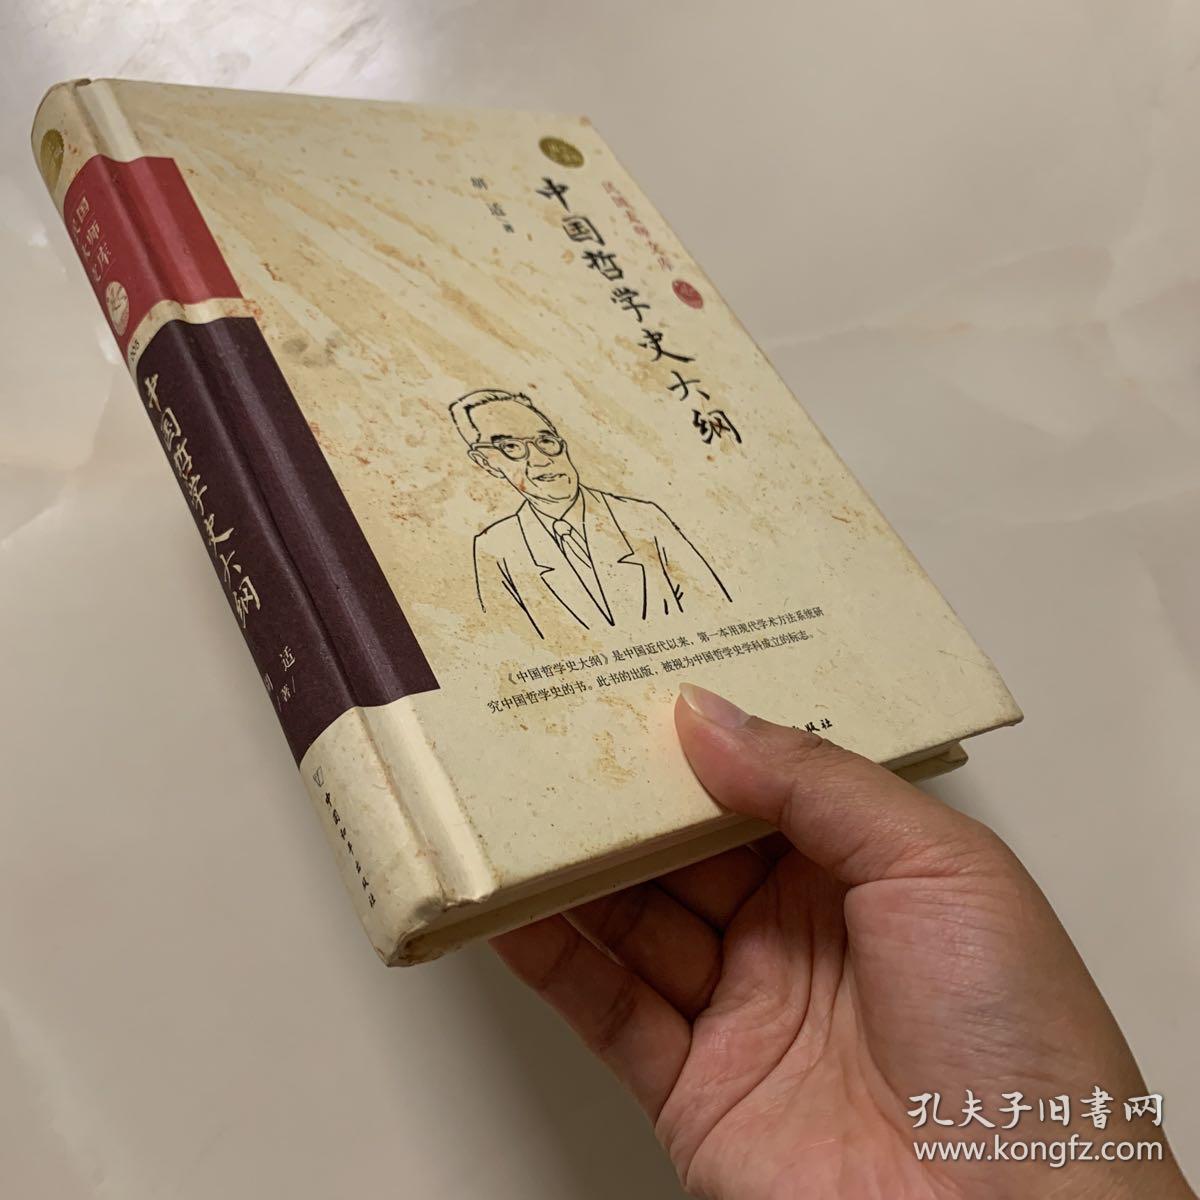 中国哲学史大纲（精装索引版）